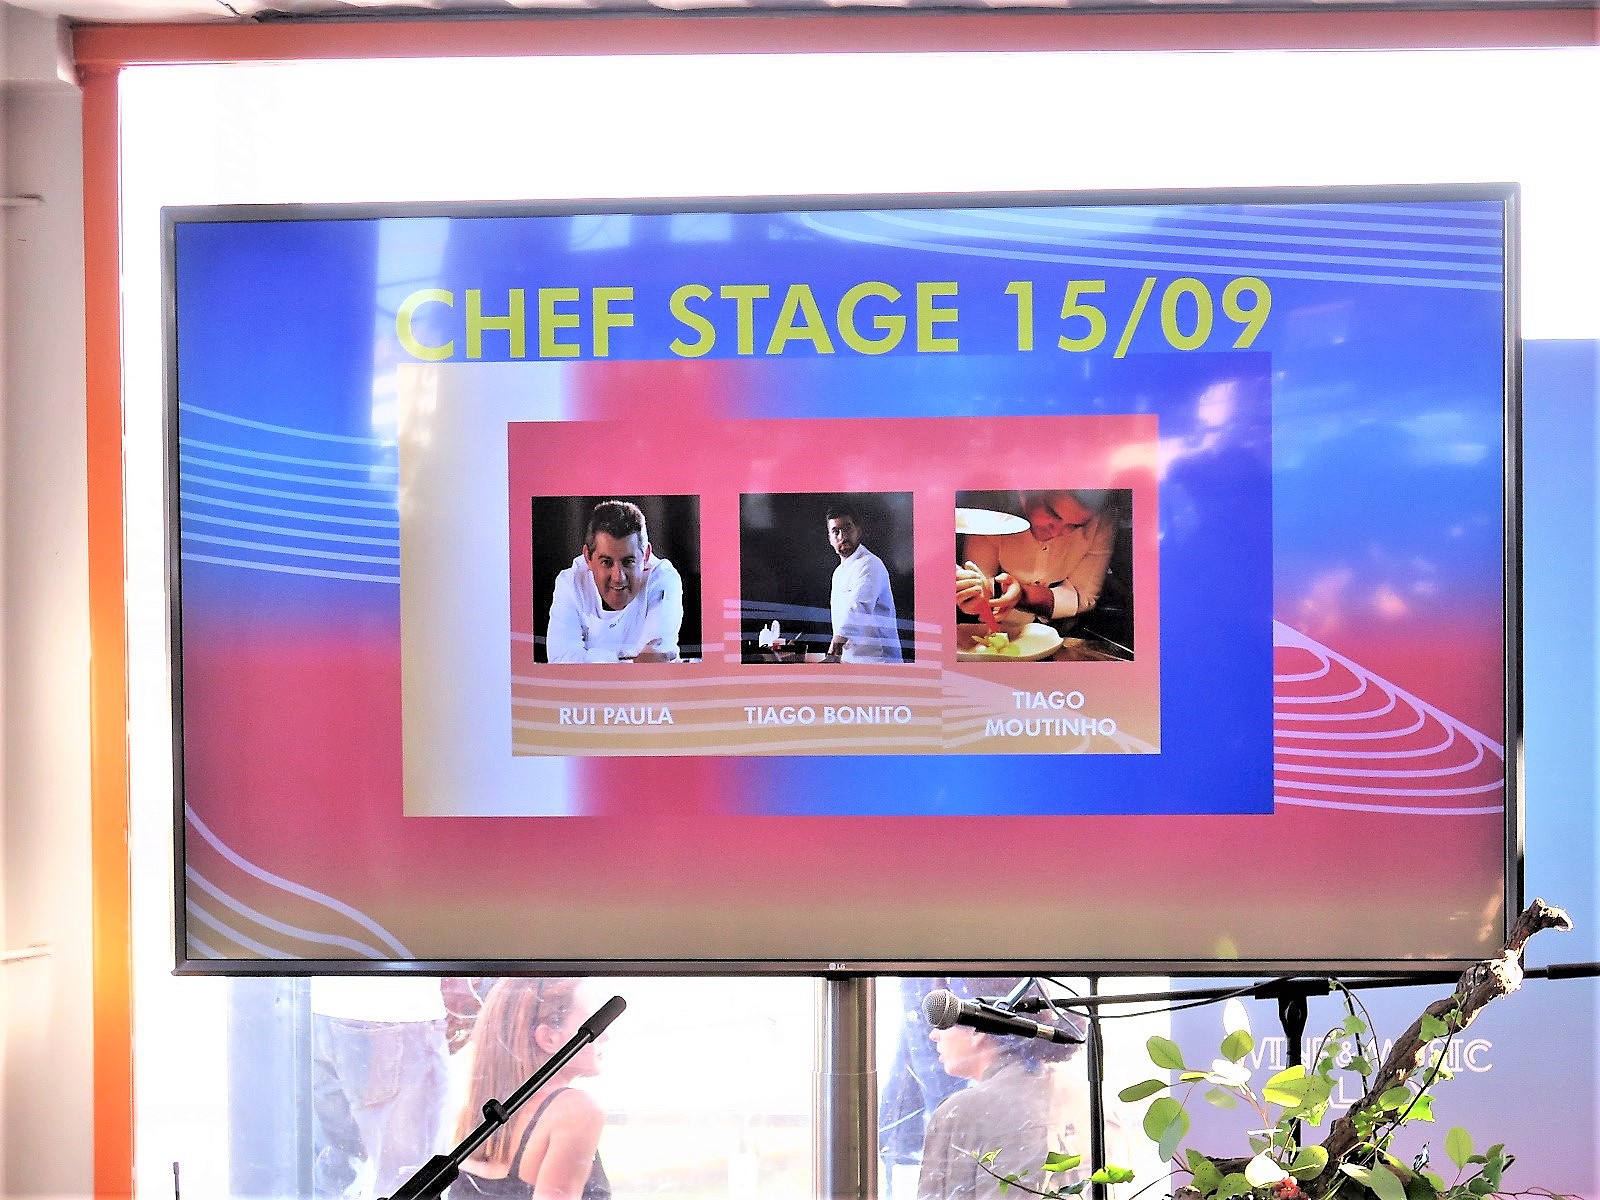 Chef’s Stage 15/9: Rui Paula + Tiago Bonito + Tiago Moutinho